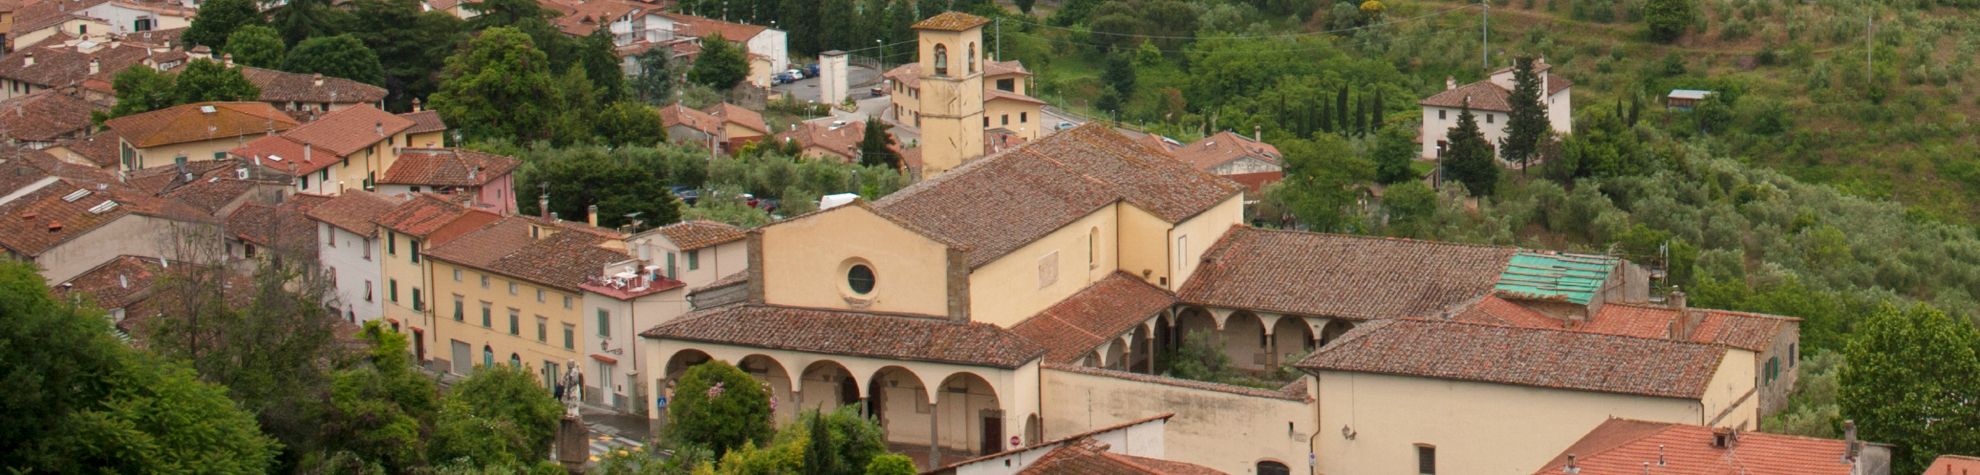 chiesa-di-san-michele-e-francesco-carmignano-edited-ph-bolognini